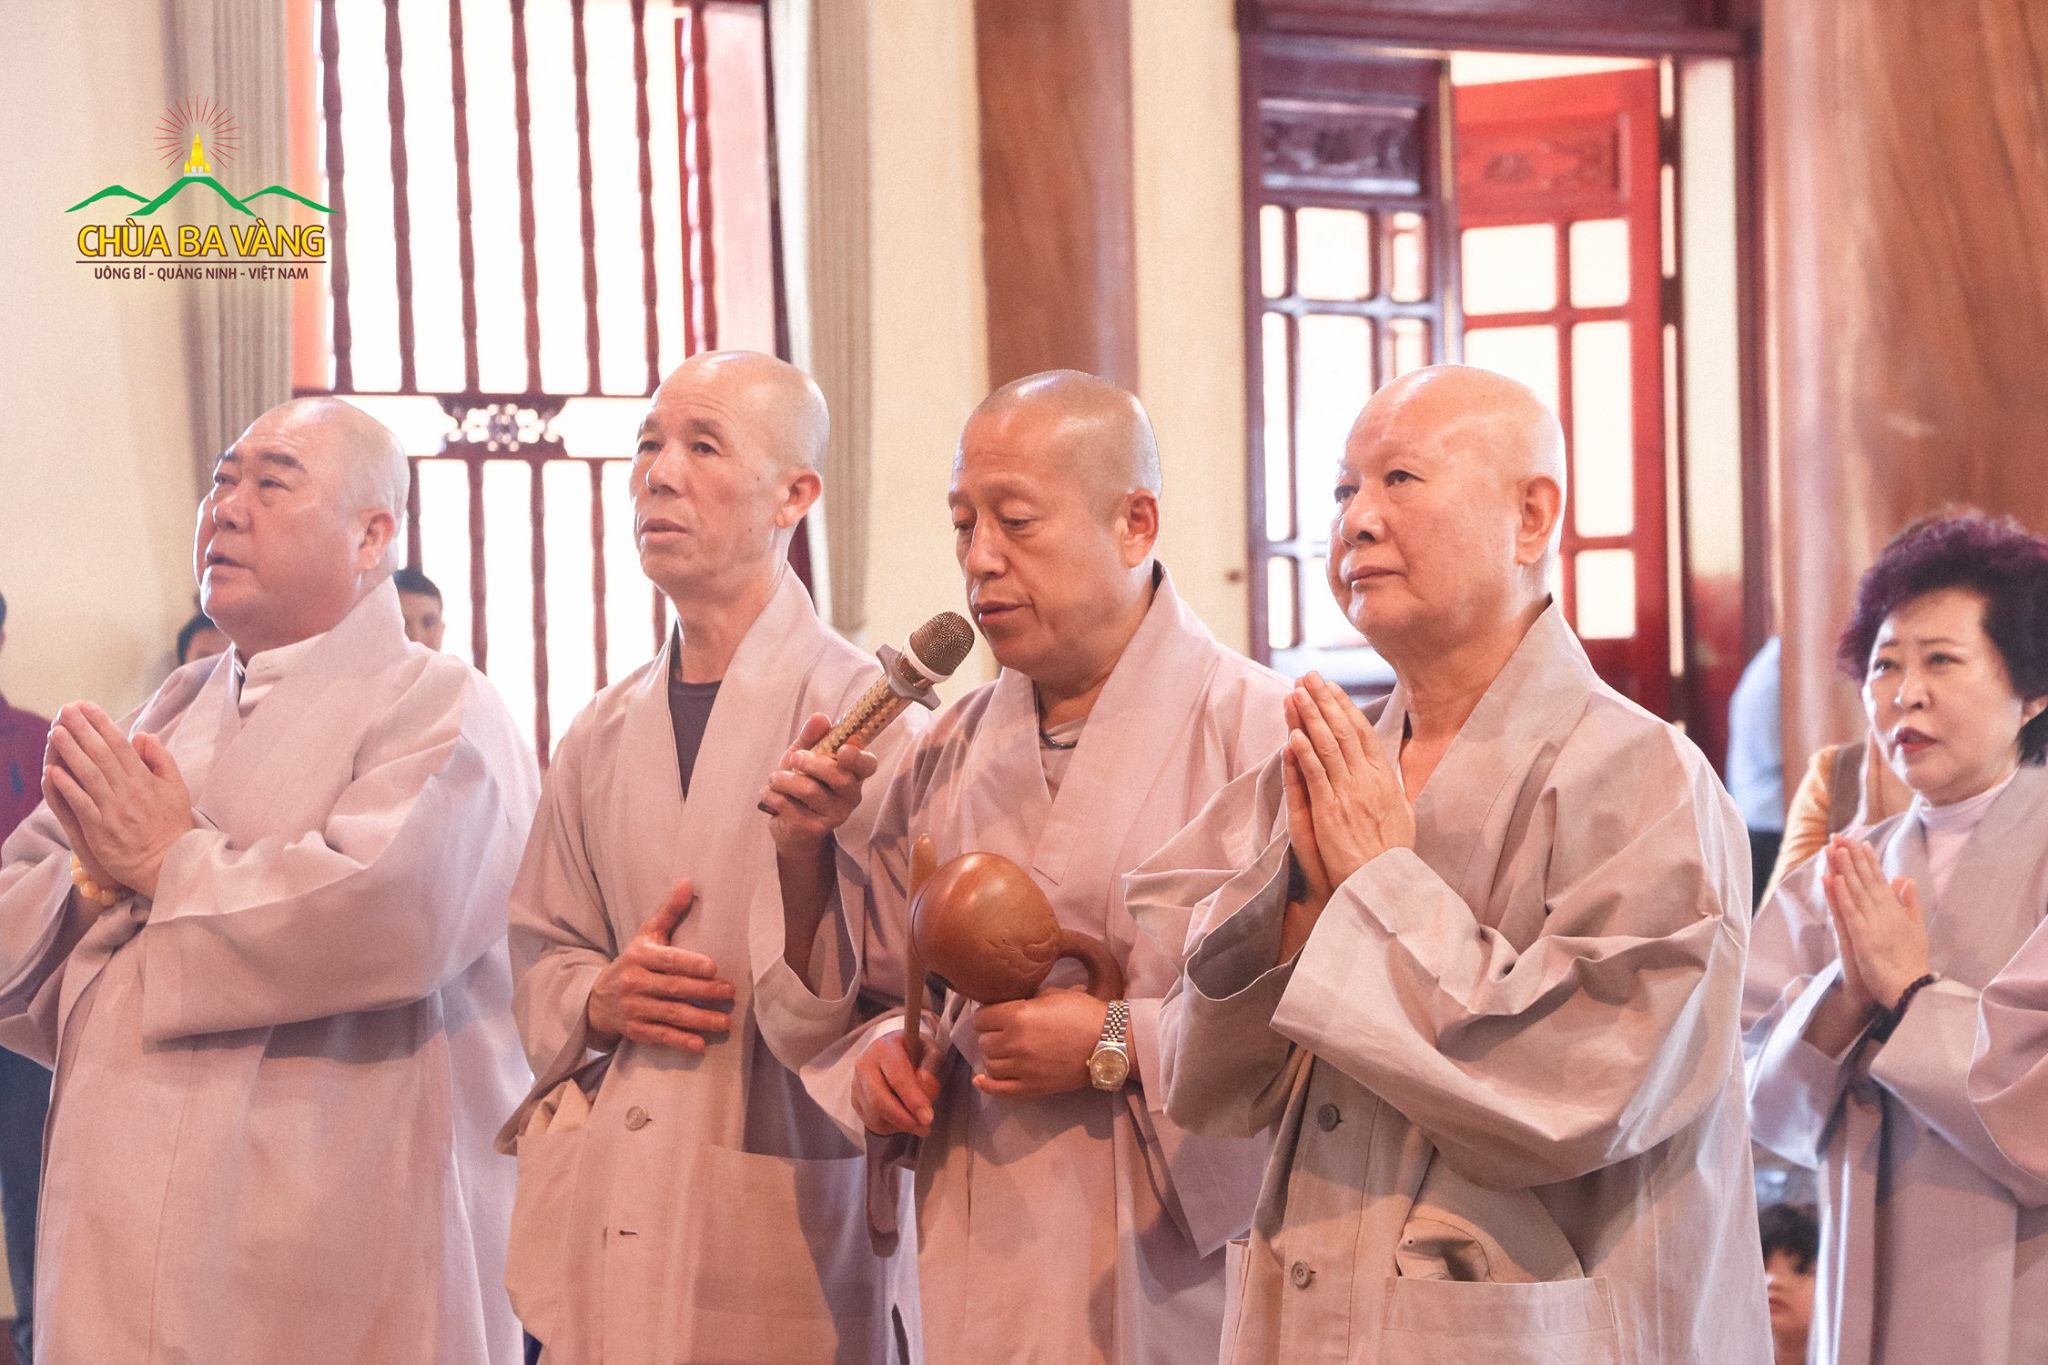 Phái đoàn Giáo hội Phật giáo Hàn Quốc lễ Phật tại chánh điện chùa Ba Vàng.